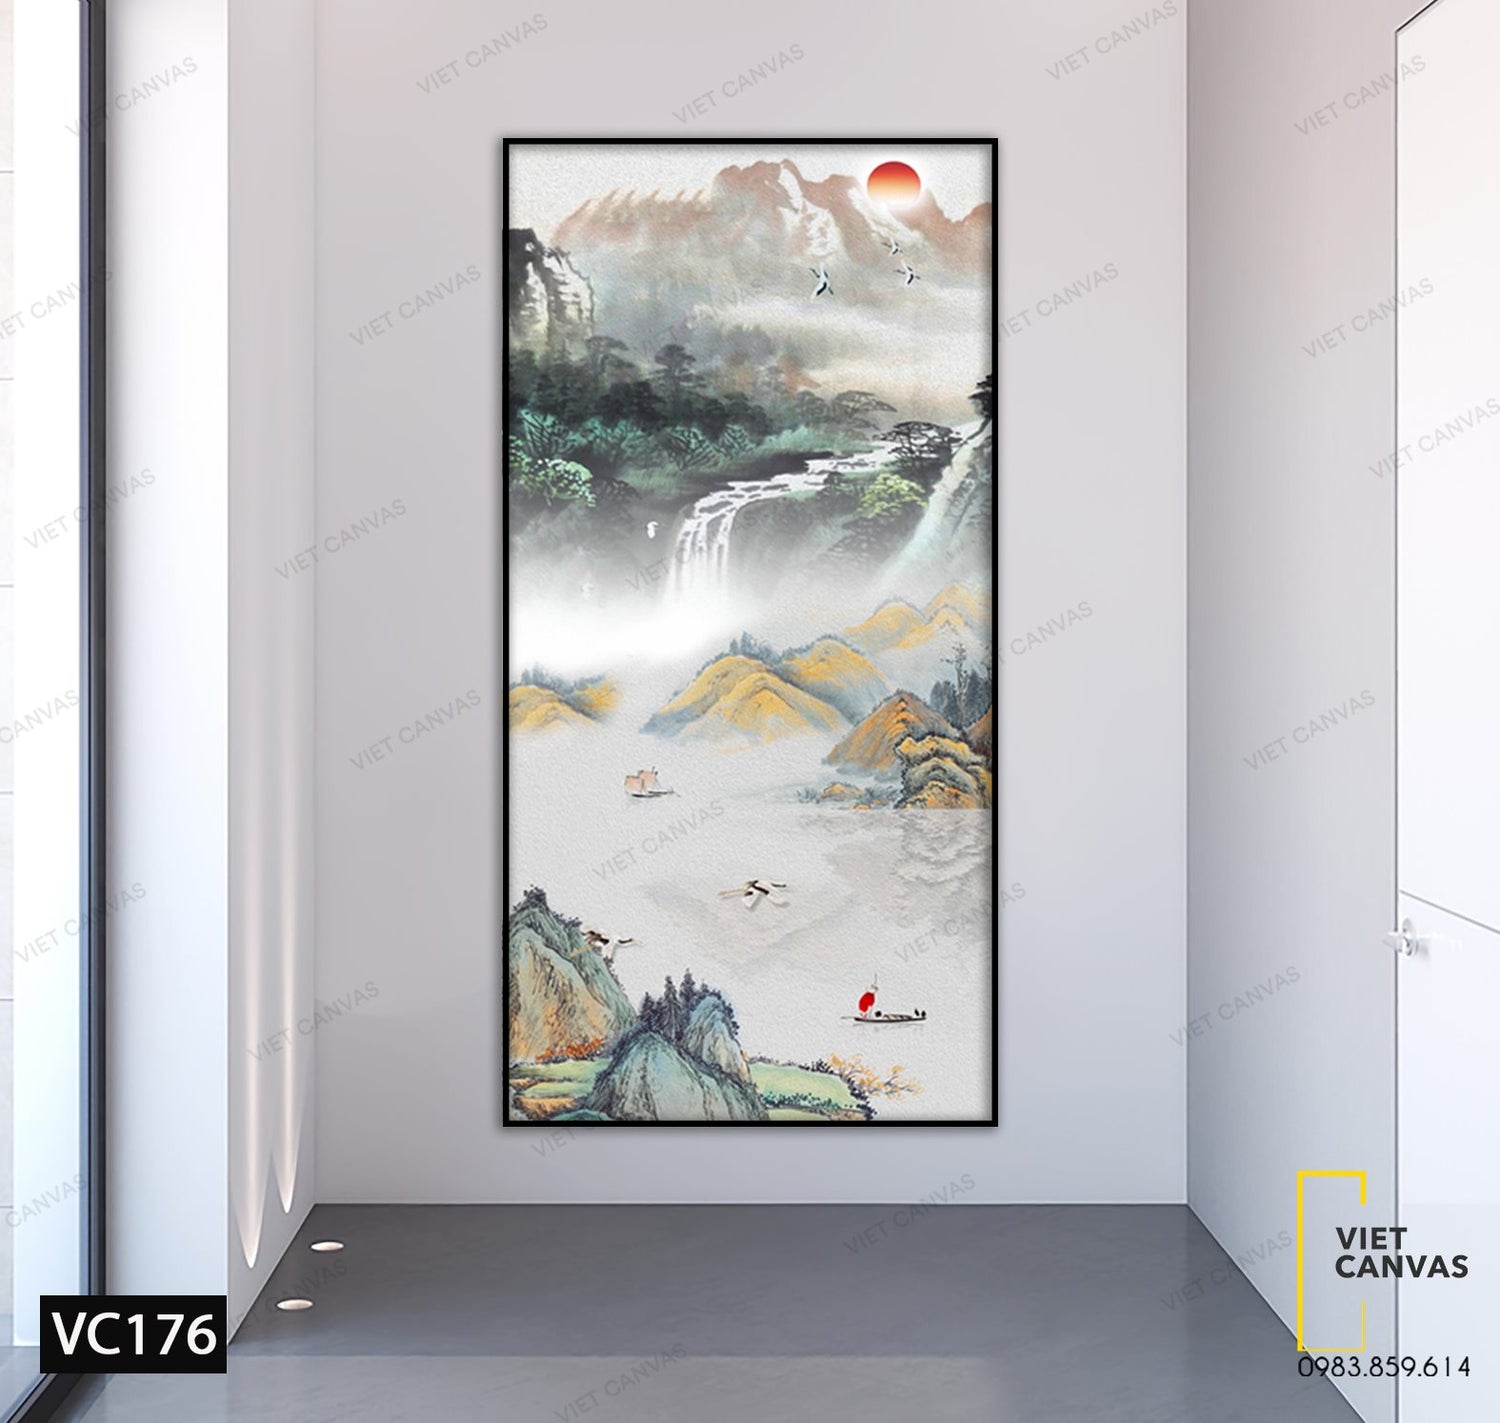 Tranh Phong Cảnh Thơ Mộng - VC176 – Viet Canvas